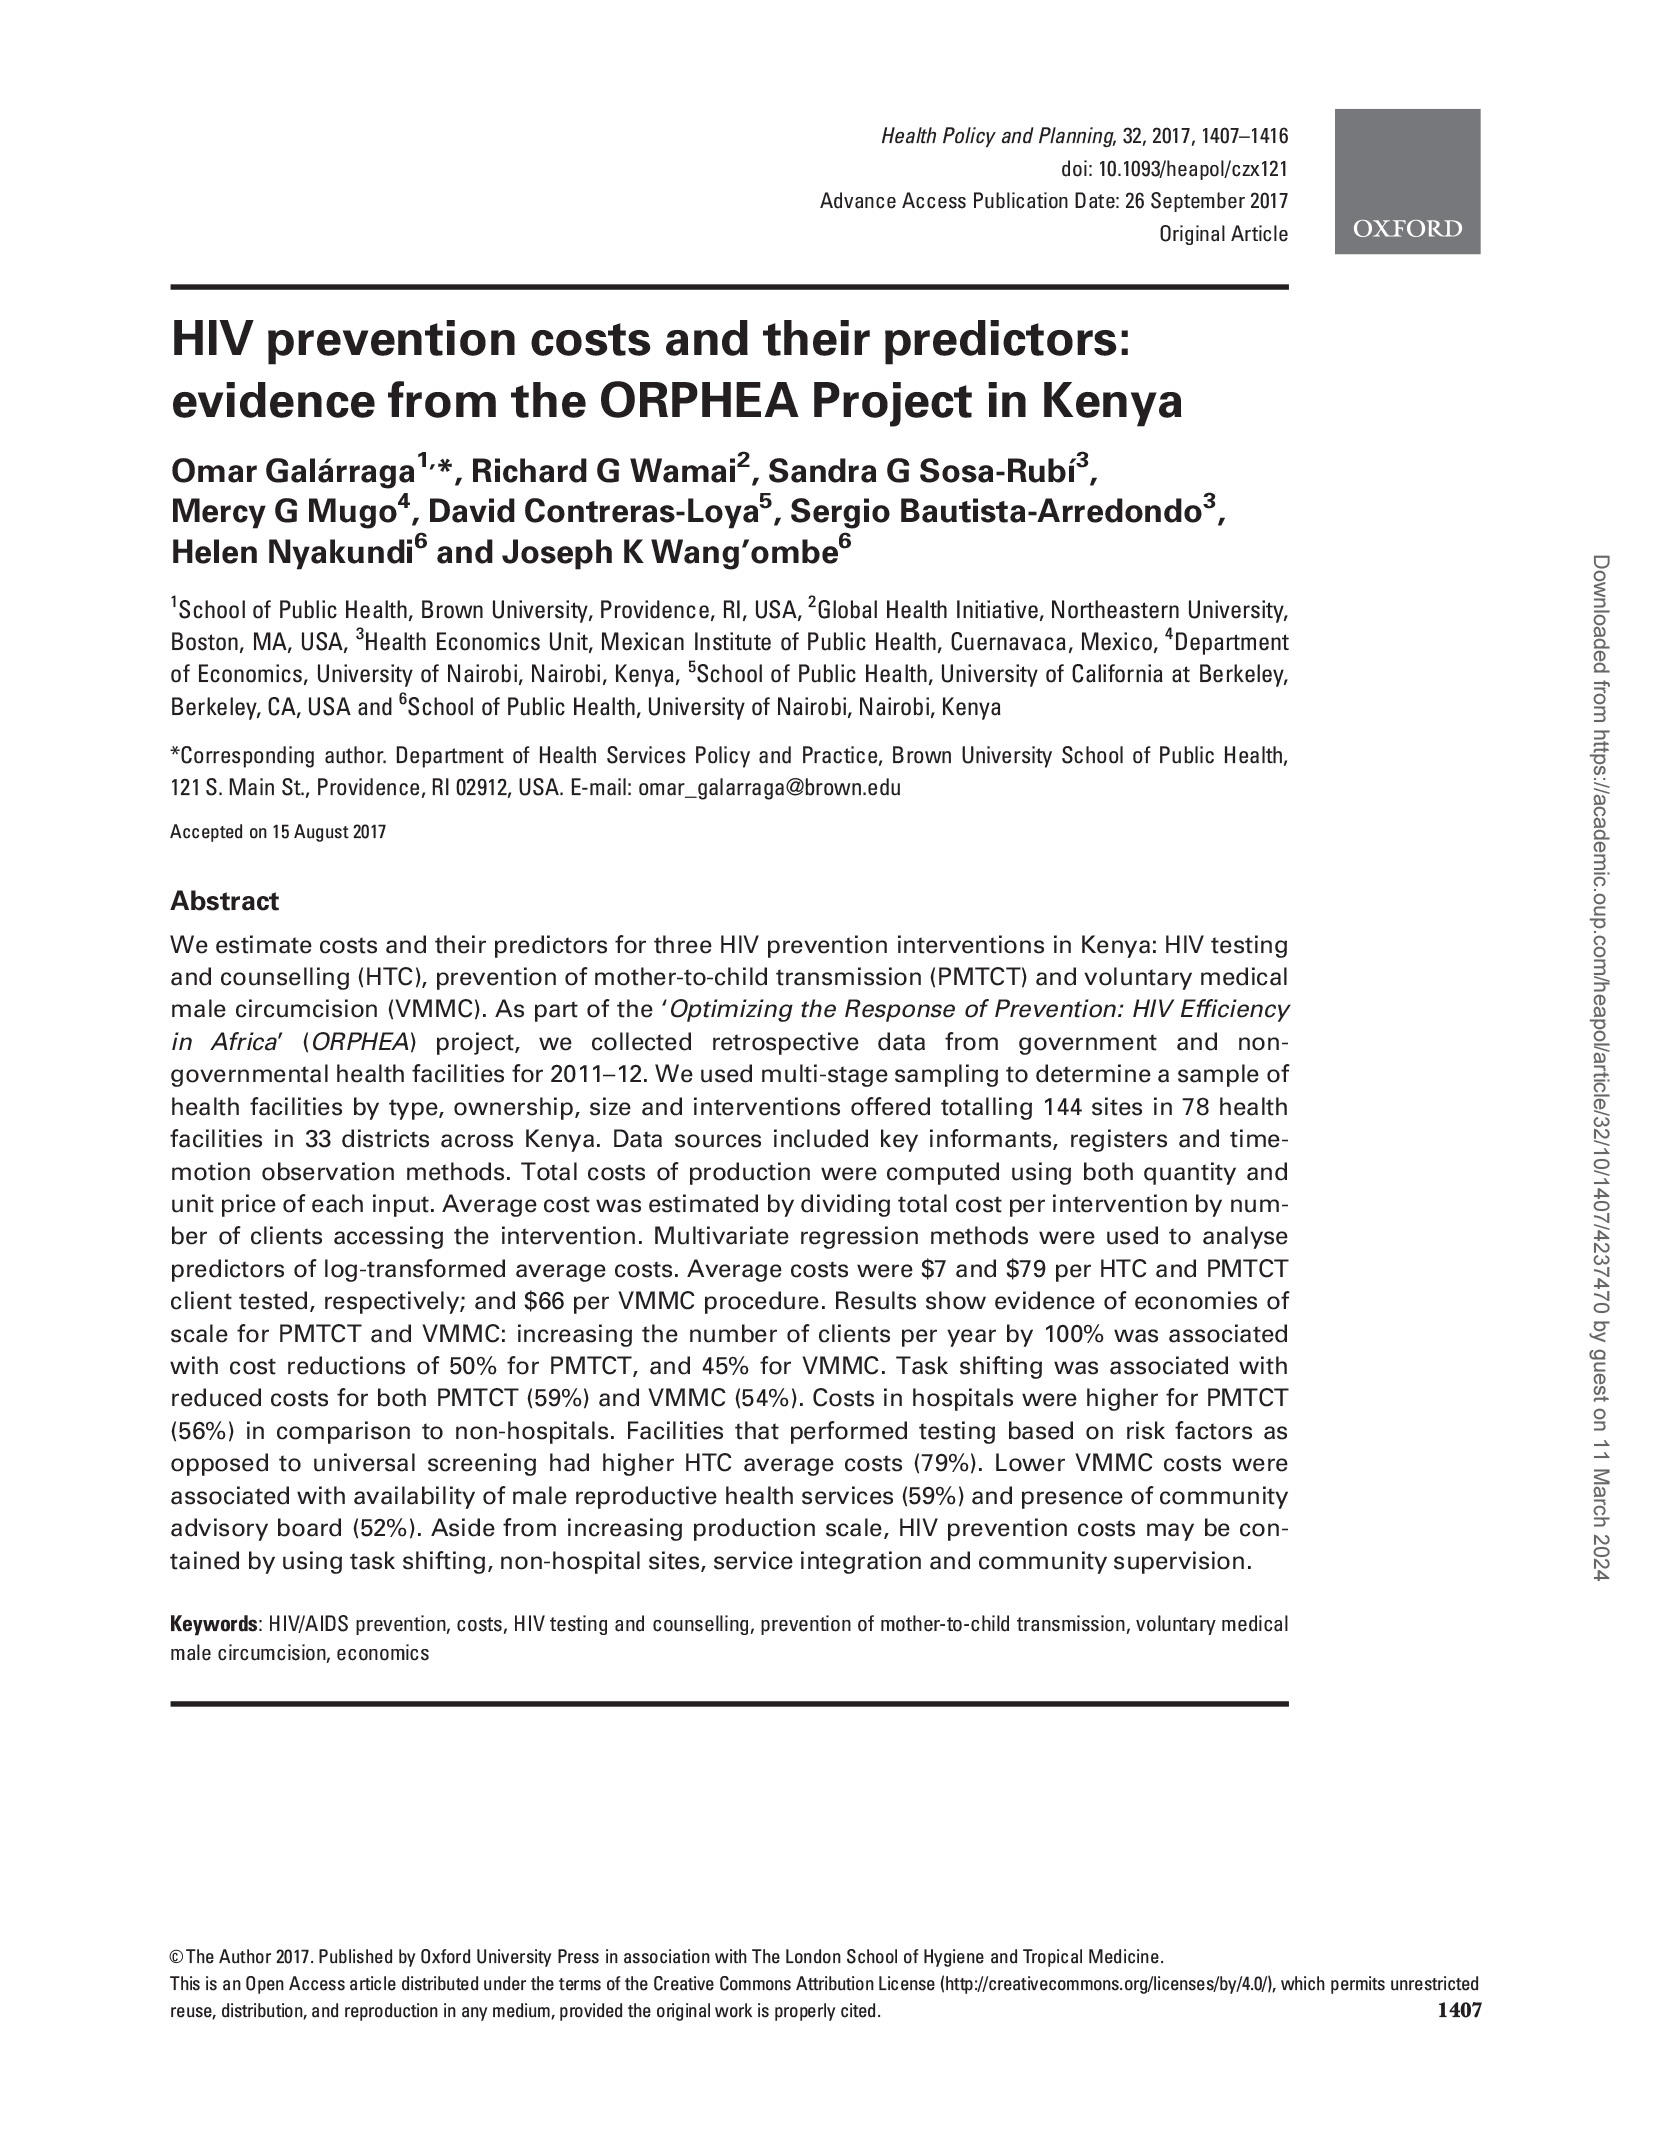 Los costes de la prevención del VIH y sus predictores: Pruebas del proyecto ORPHEA en Kenia - portada